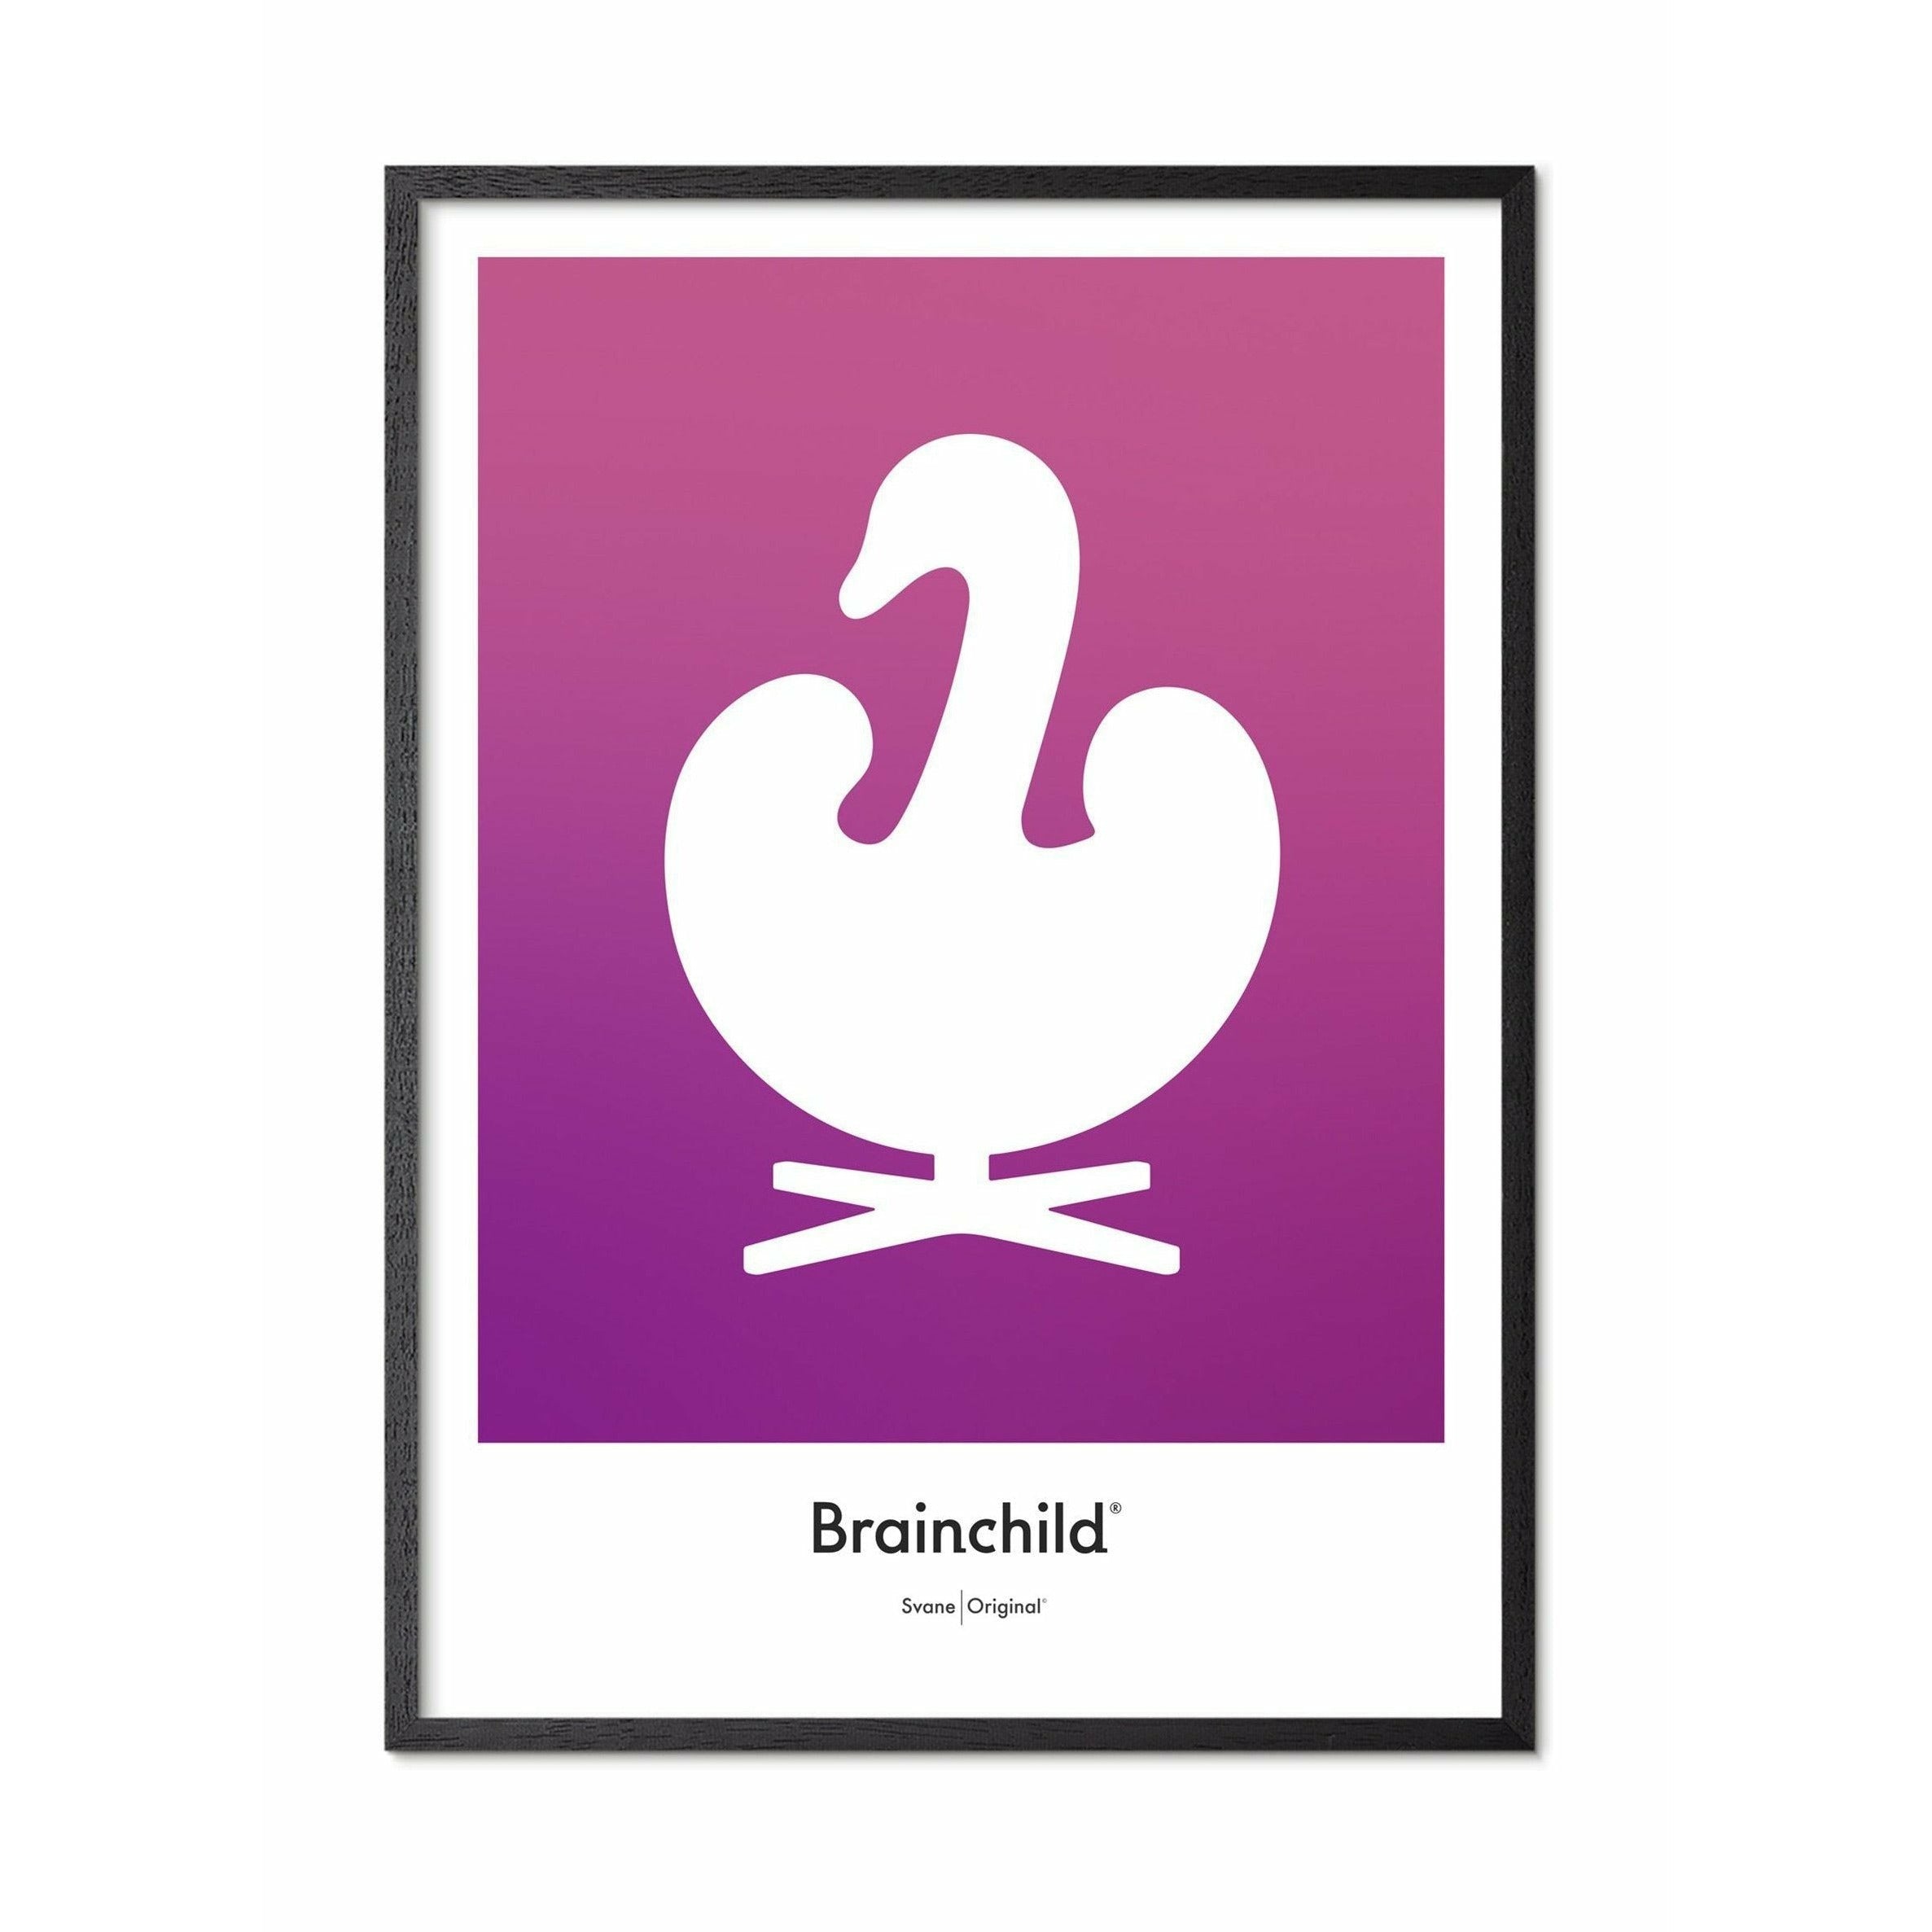 Brainchild Affiche de l'icône de conception de cygne, cadre en bois laqué noir A5, violet